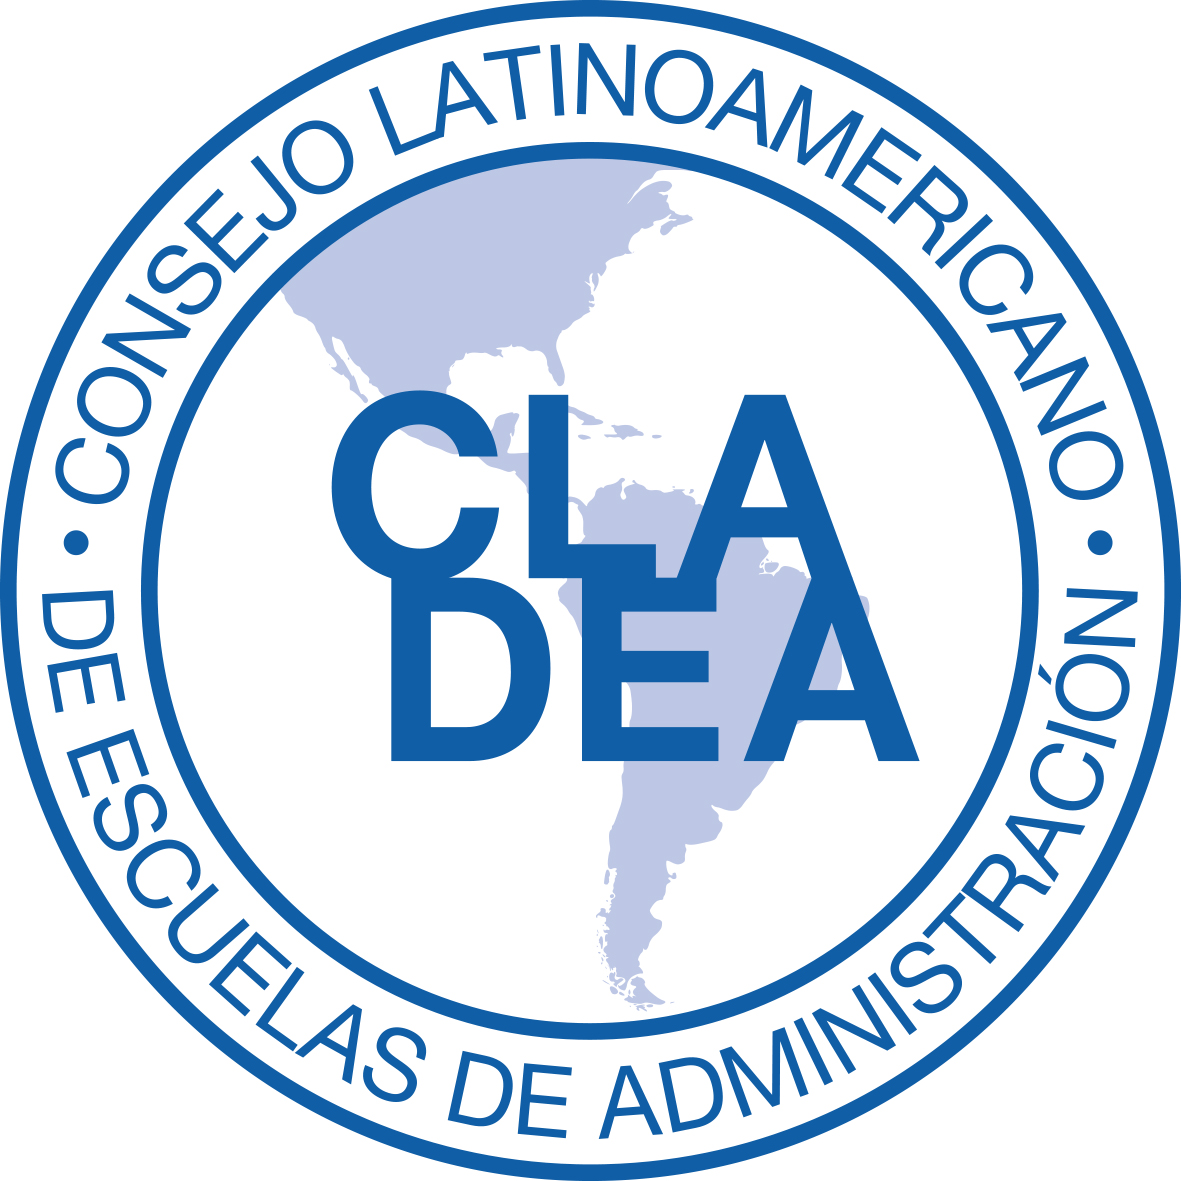 Latin American Council of Management Schools (CLADEA)